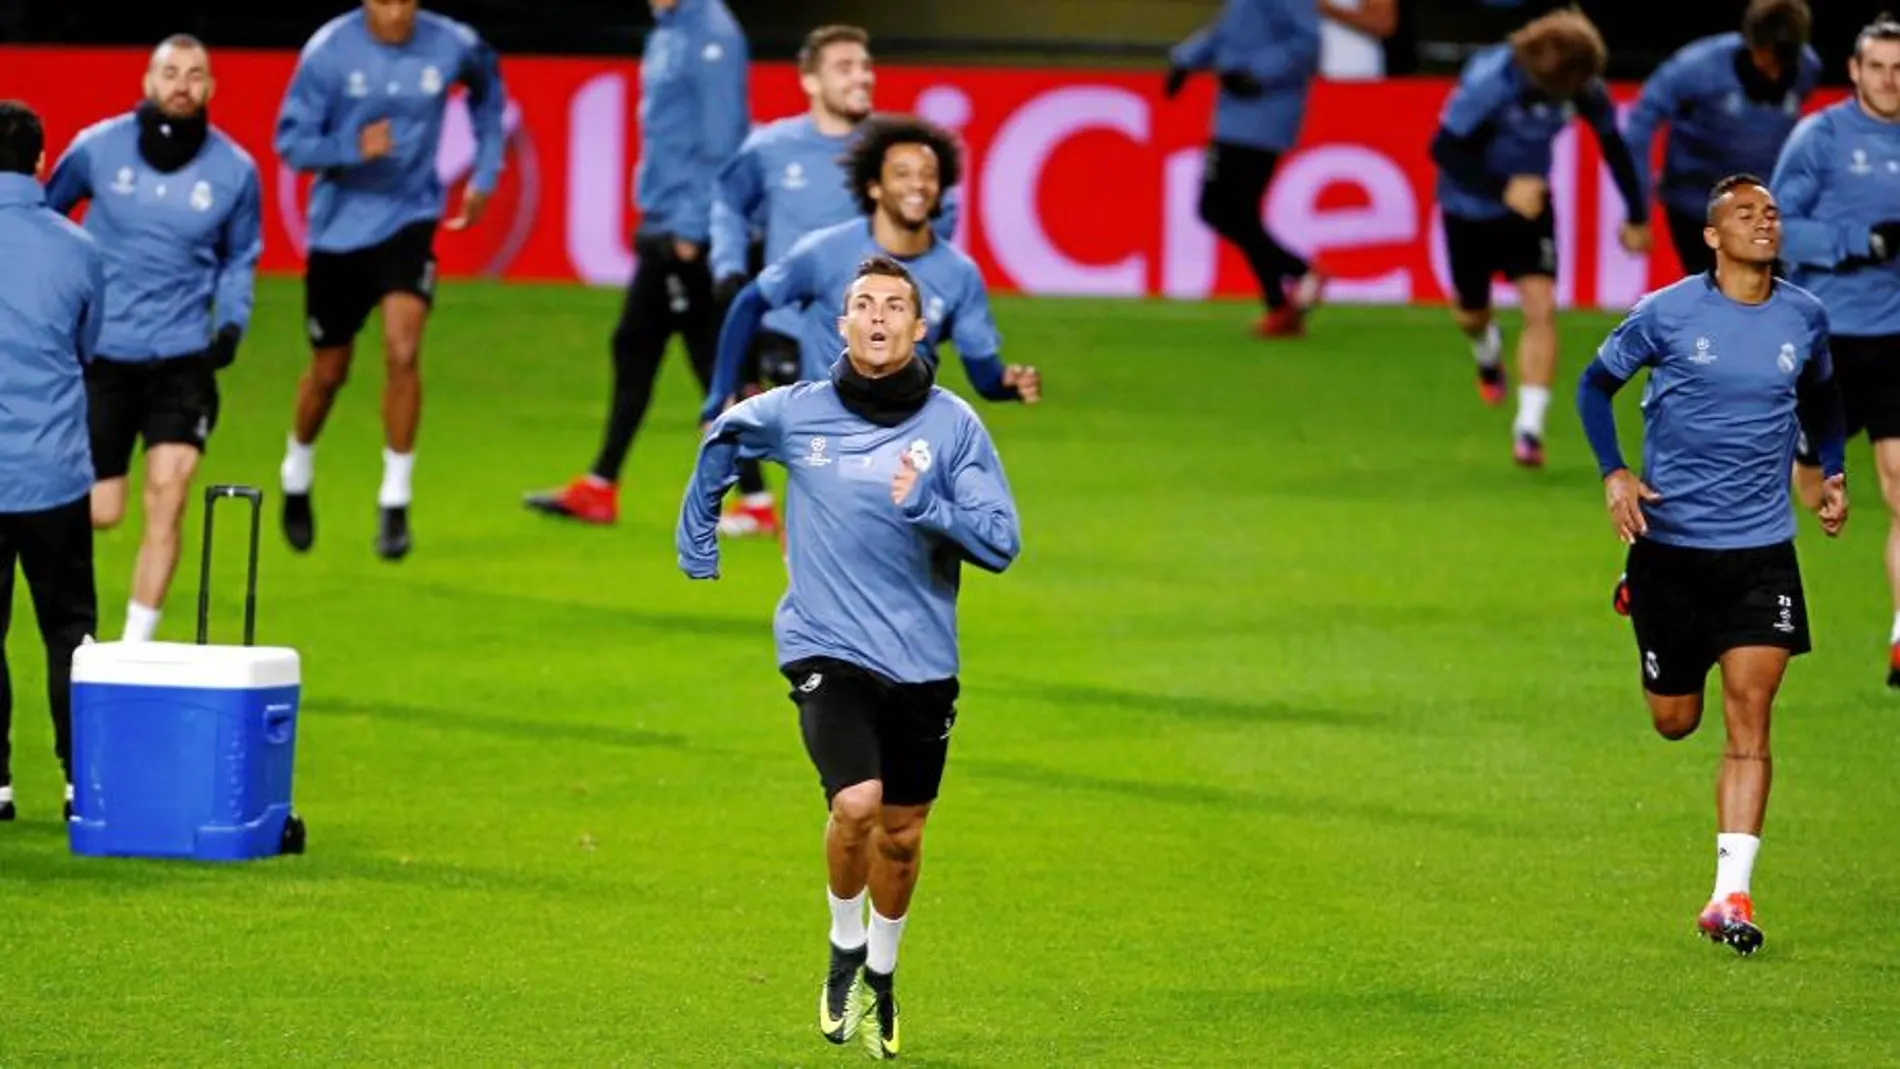 Ronaldo, en el entrenamiento de ayer del Madrid en Lisboa. Danilo, Benzema, Marcelo y Bale corren detrás de él